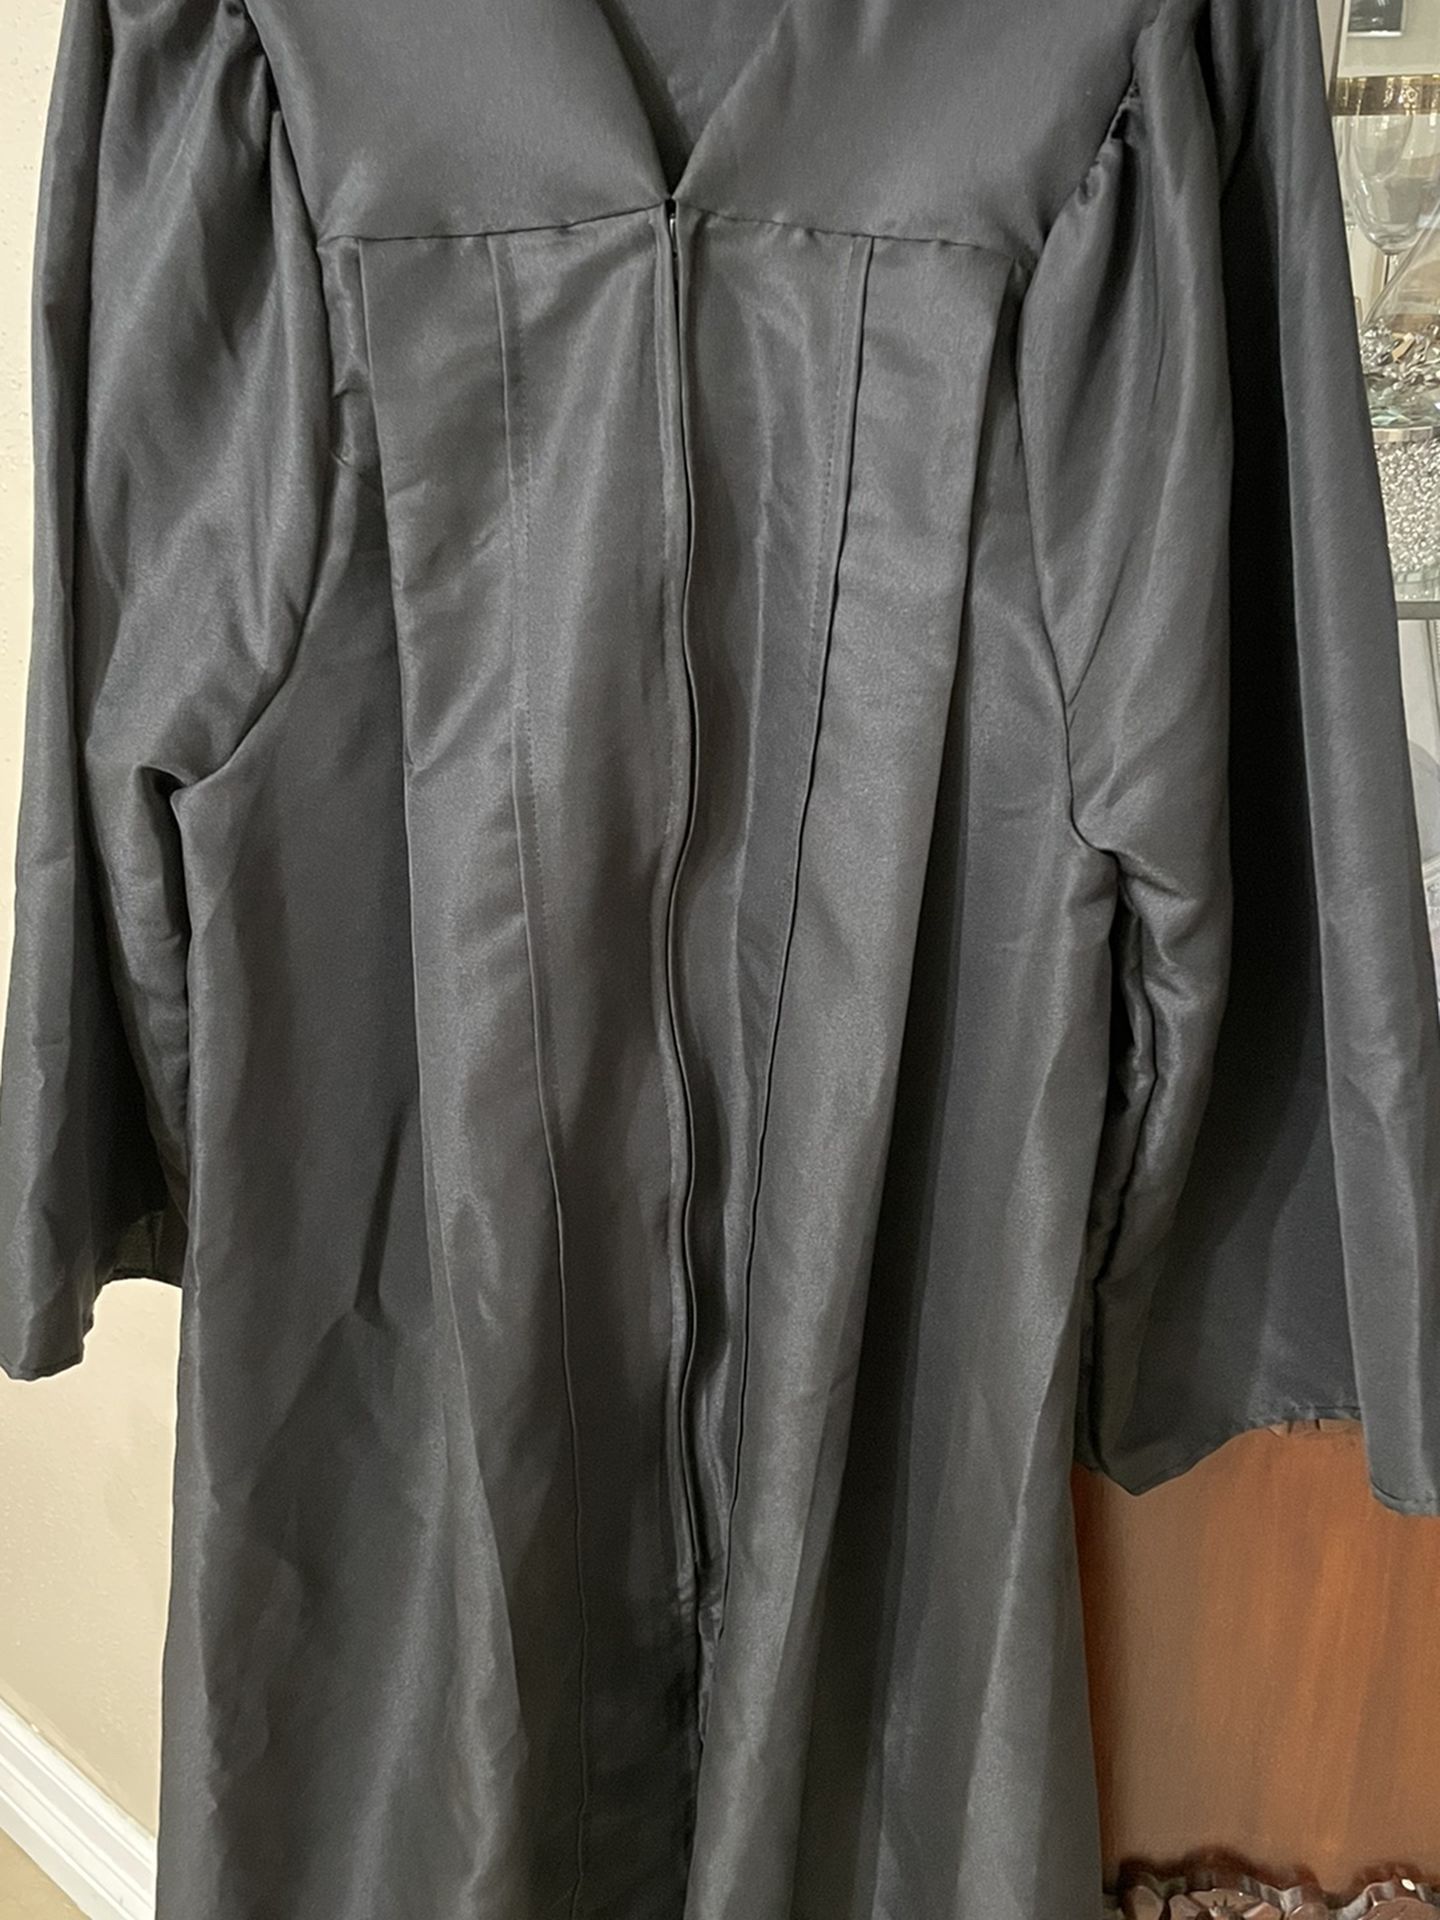 Black Graduation Gown (No Cap)